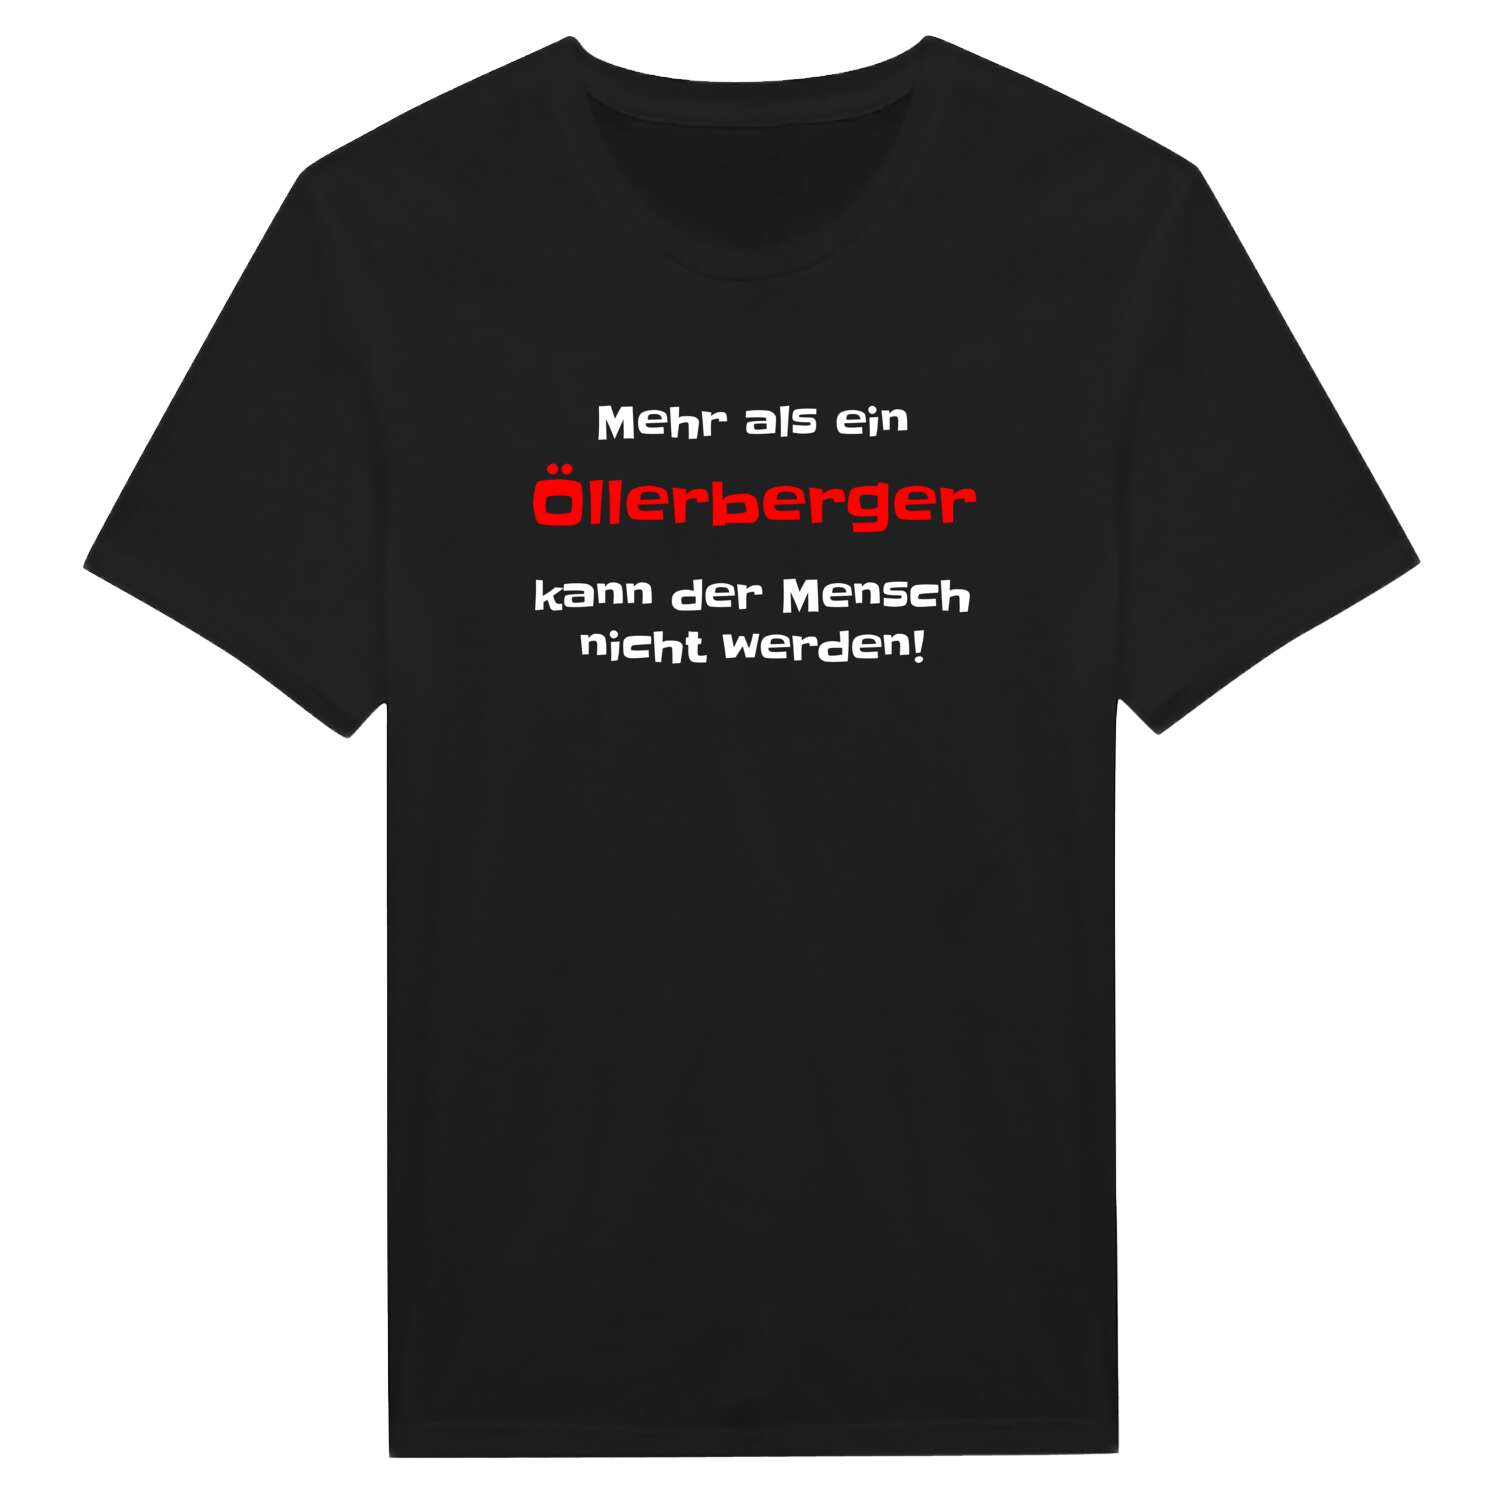 Öllerberg T-Shirt »Mehr als ein«